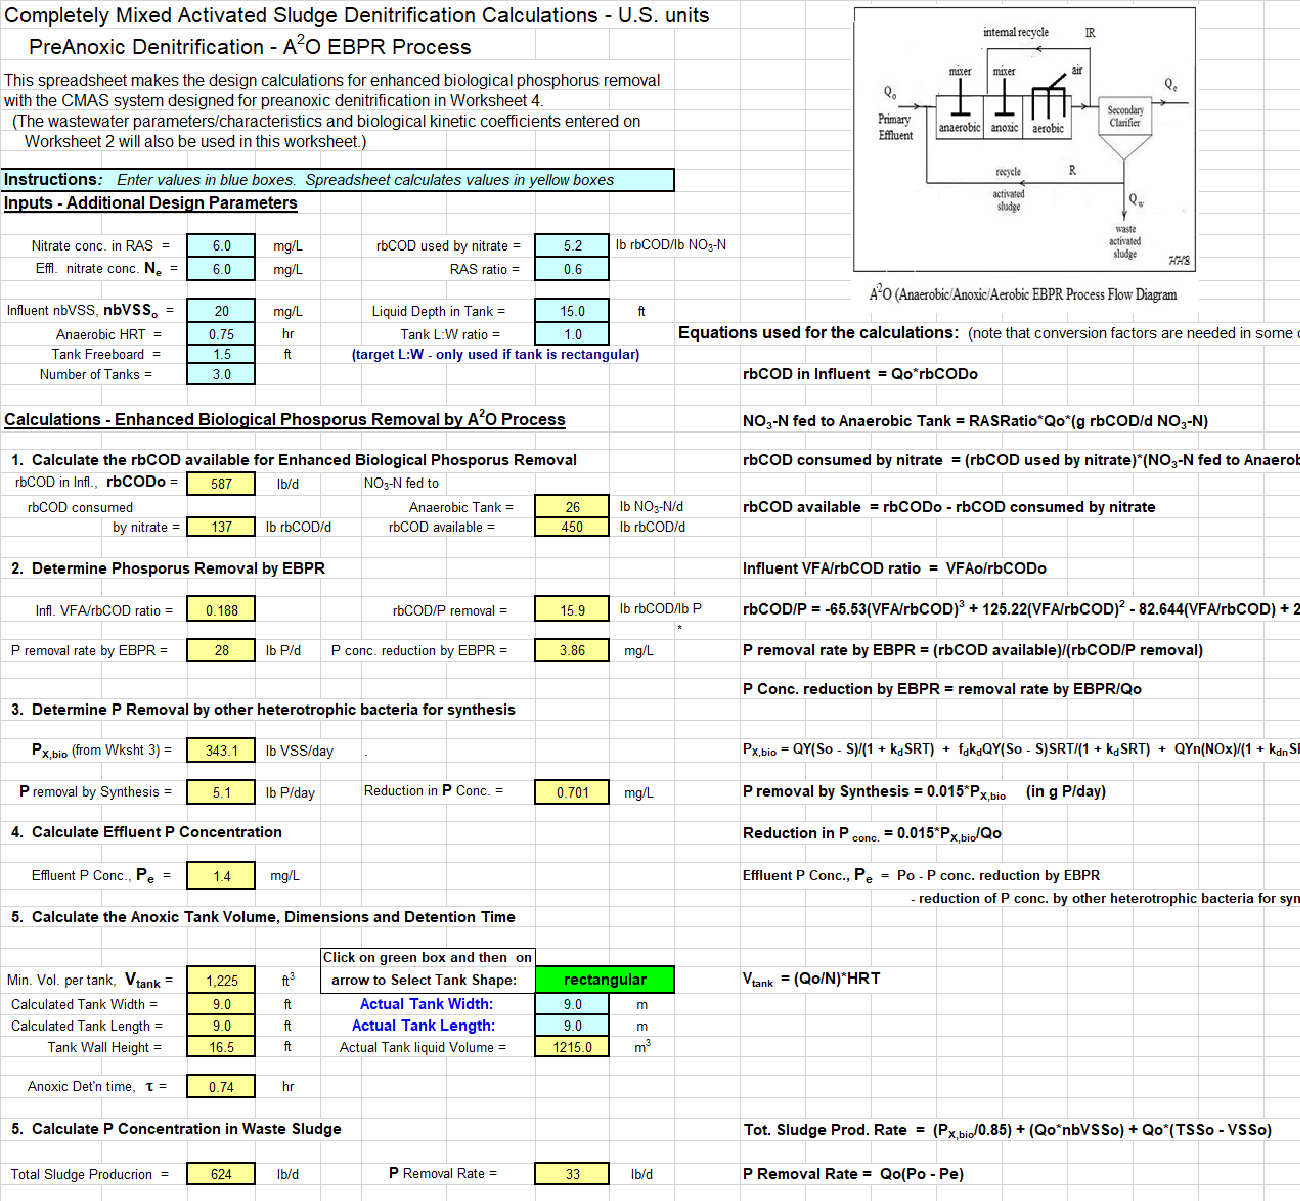 EBPR Design Calculations Spreadsheet Screenshot